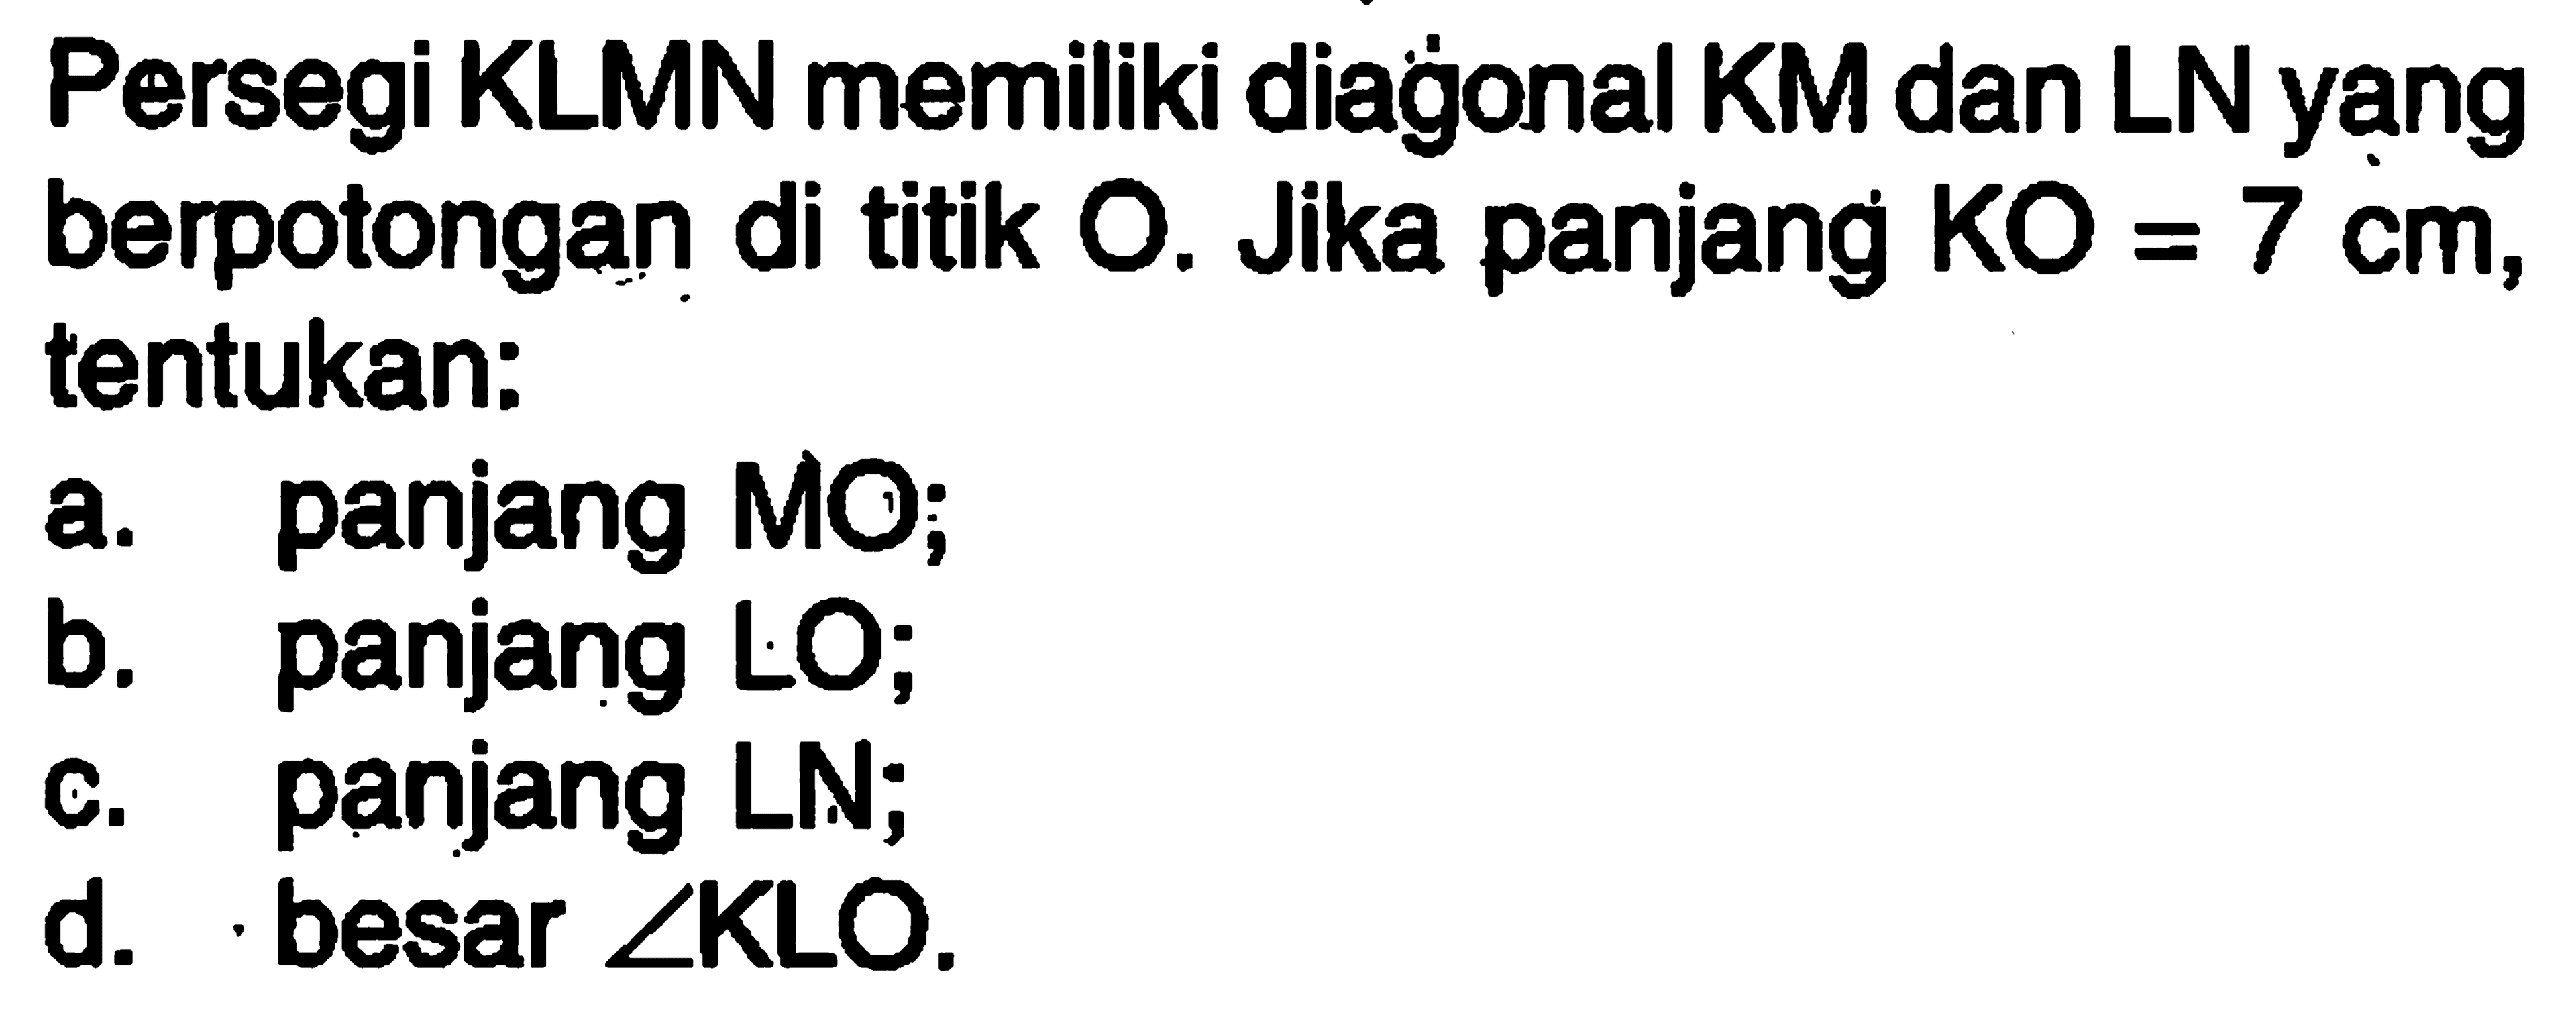 Persegi KLMN memiliki diagonal KM dan LN yạng berpotongan di titik O. Jika panjang  KO=7 cm, tentukan:a. panjang MO;b. panjang LO;c. panjang LN;d. besar  sudut KLO .